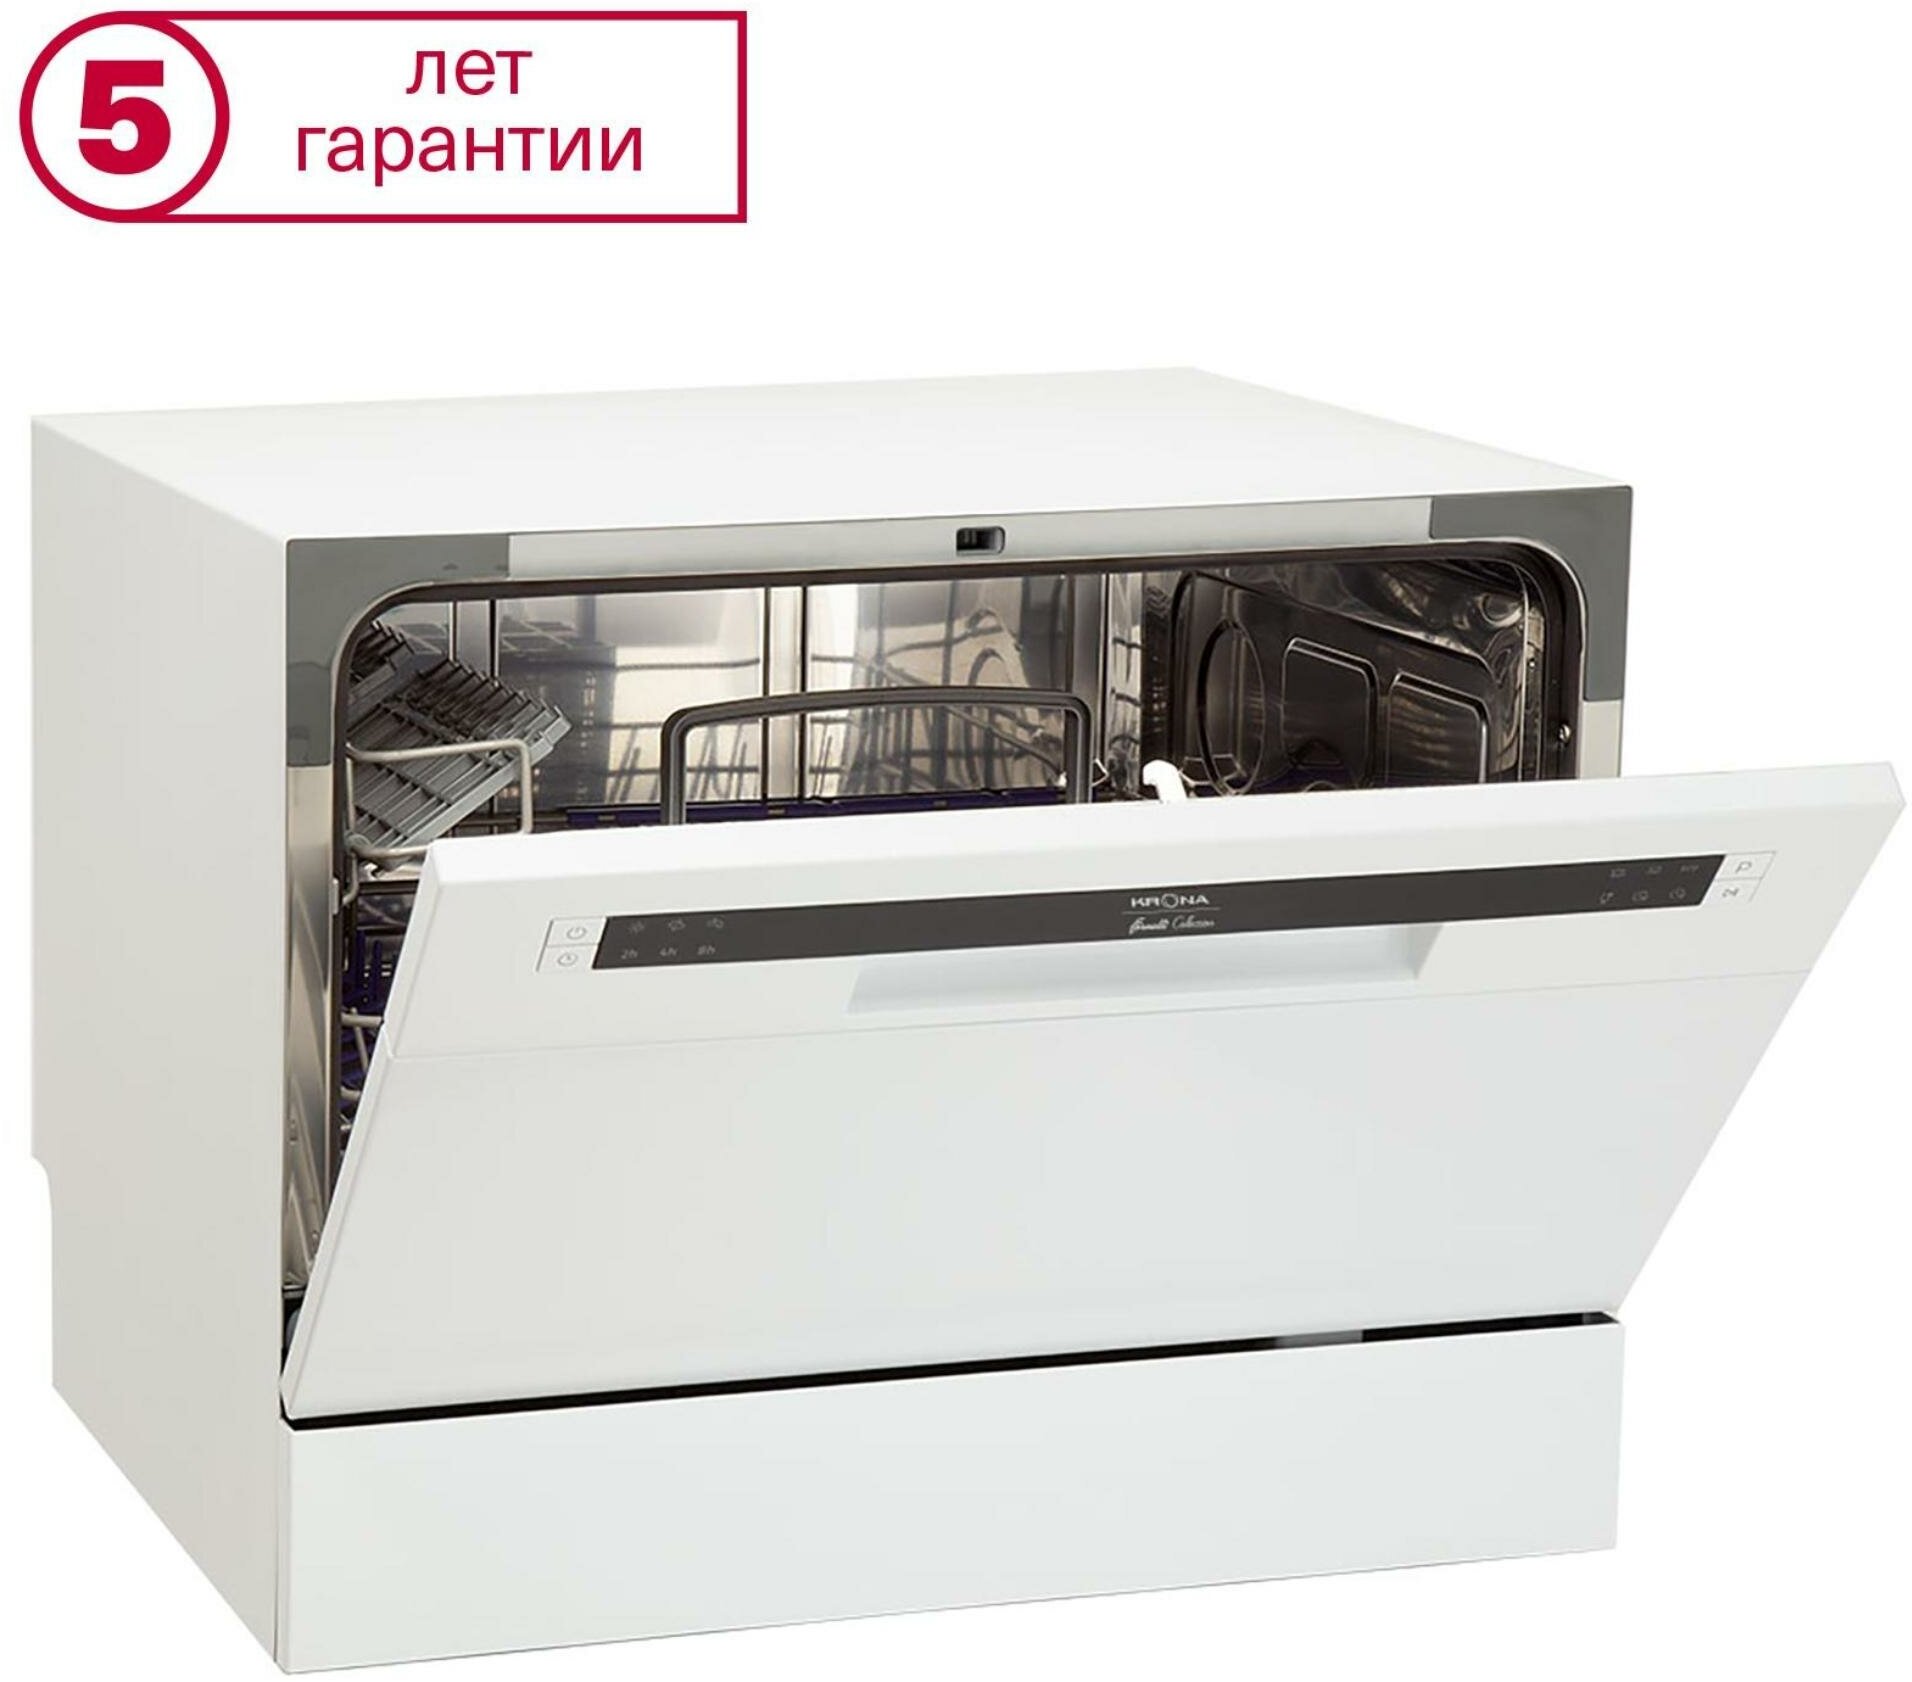 Компактная посудомоечная машина Krona - фото №17